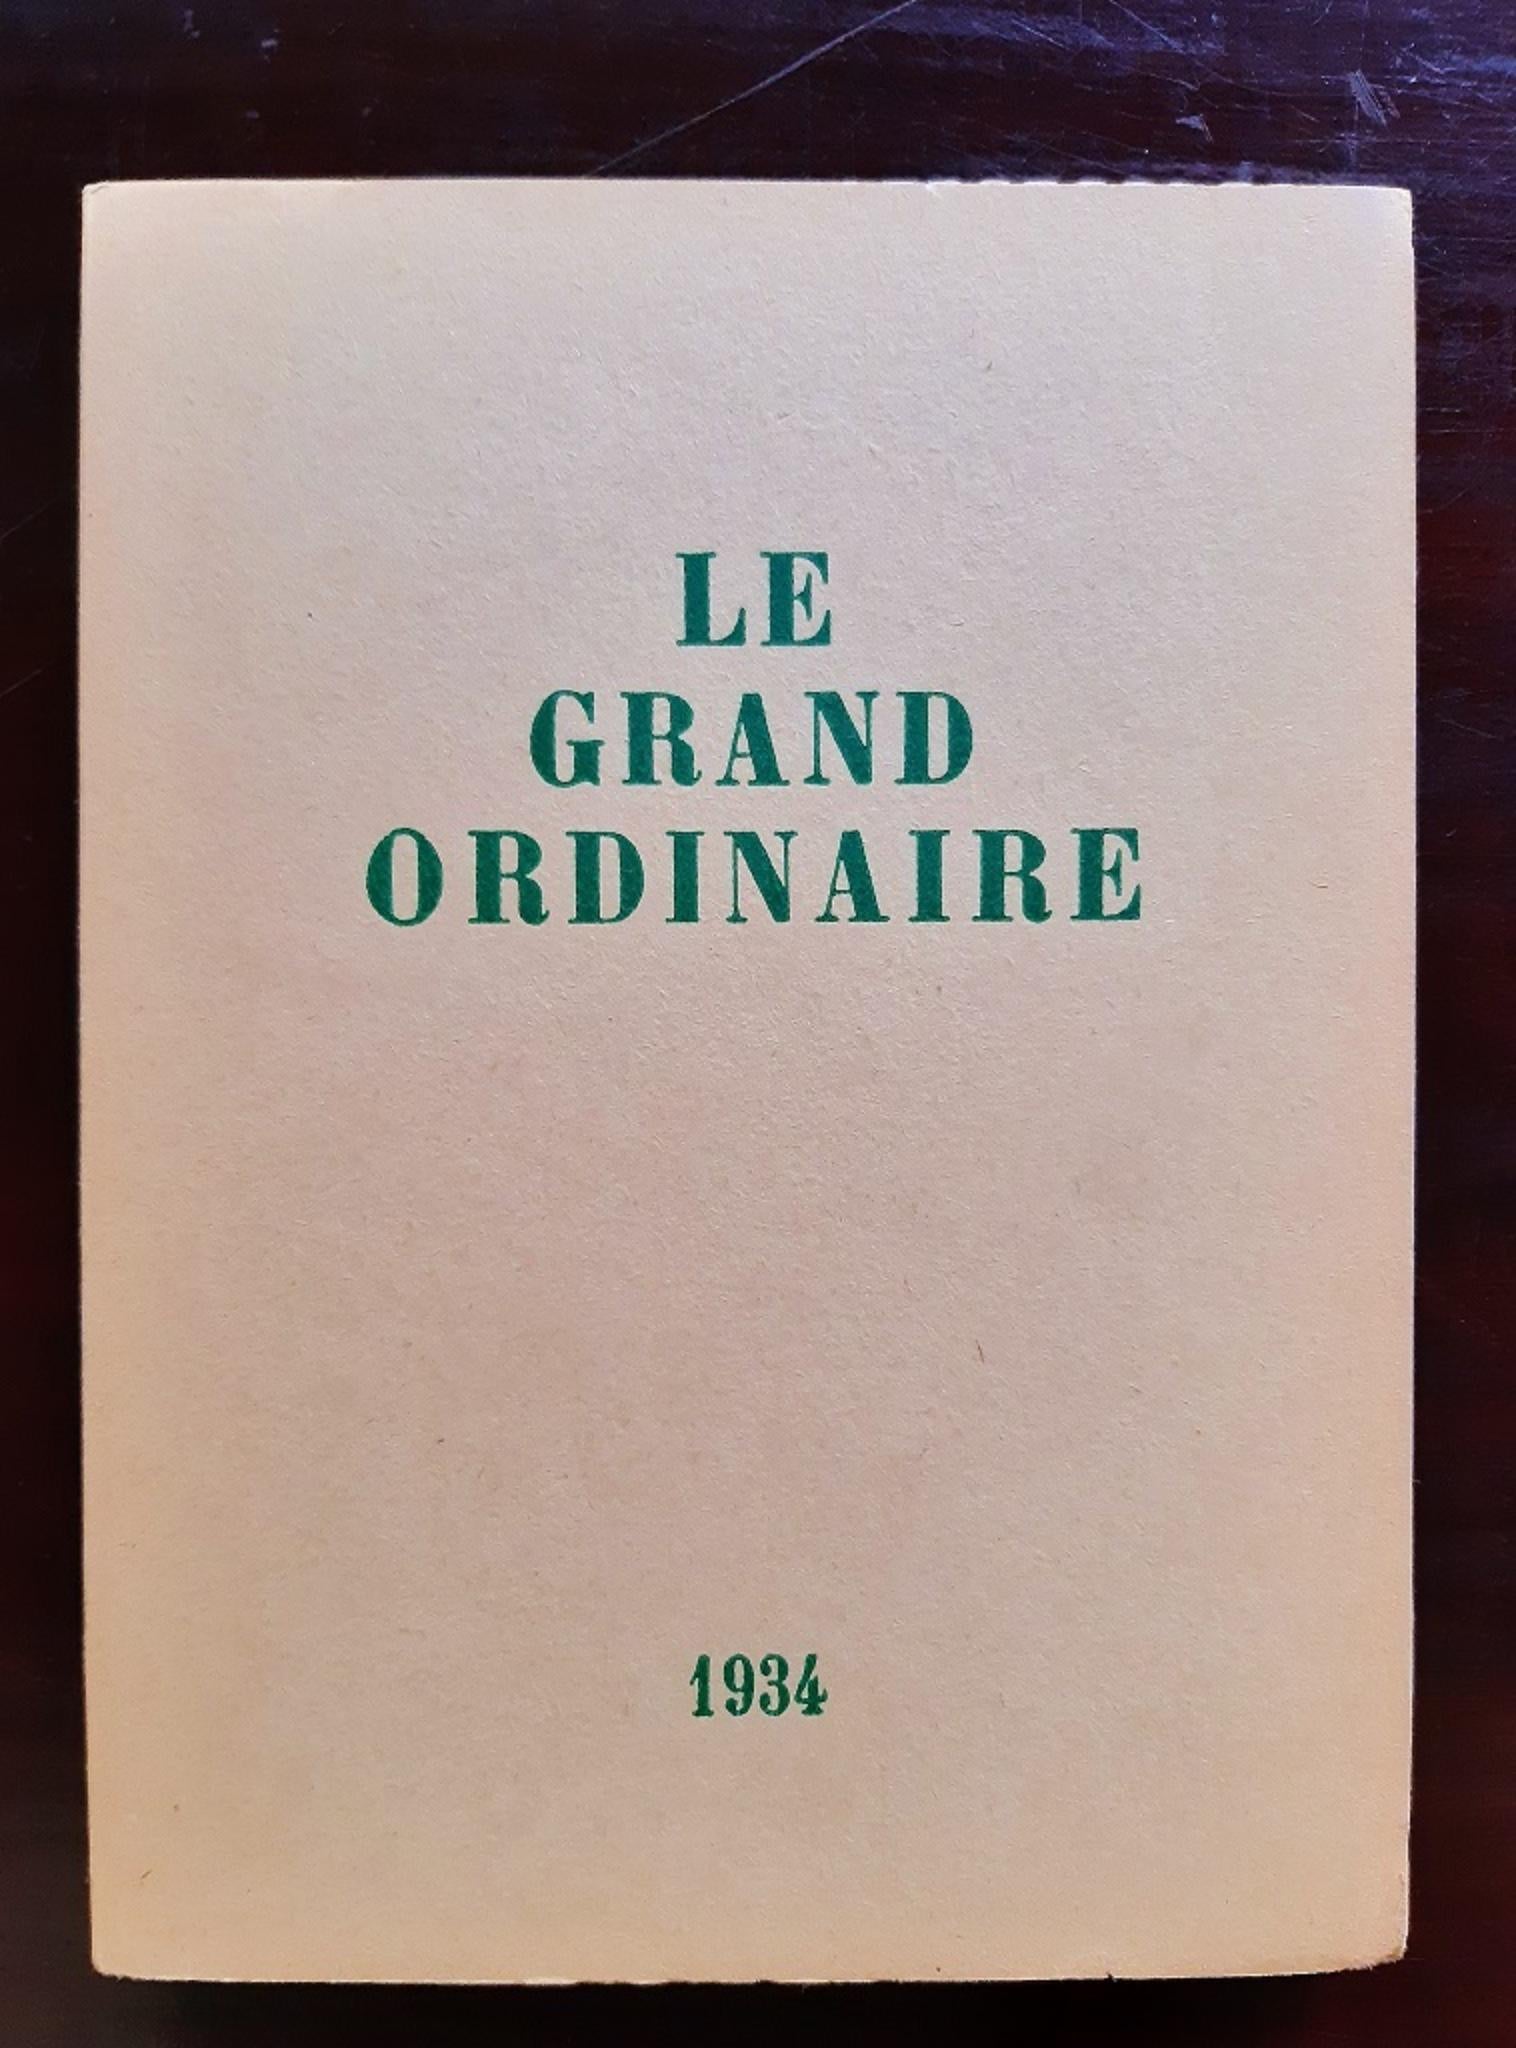 Le Grand Ordinaire est un livre original moderne très rare illustré par Oscar Dominguez  (San Cristóbal de La Laguna, 1906 - 1957) et écrit par André Thirion (1907 - 2001) en 1943, pendant l'occupation nazie de la France.

Edition clandestine